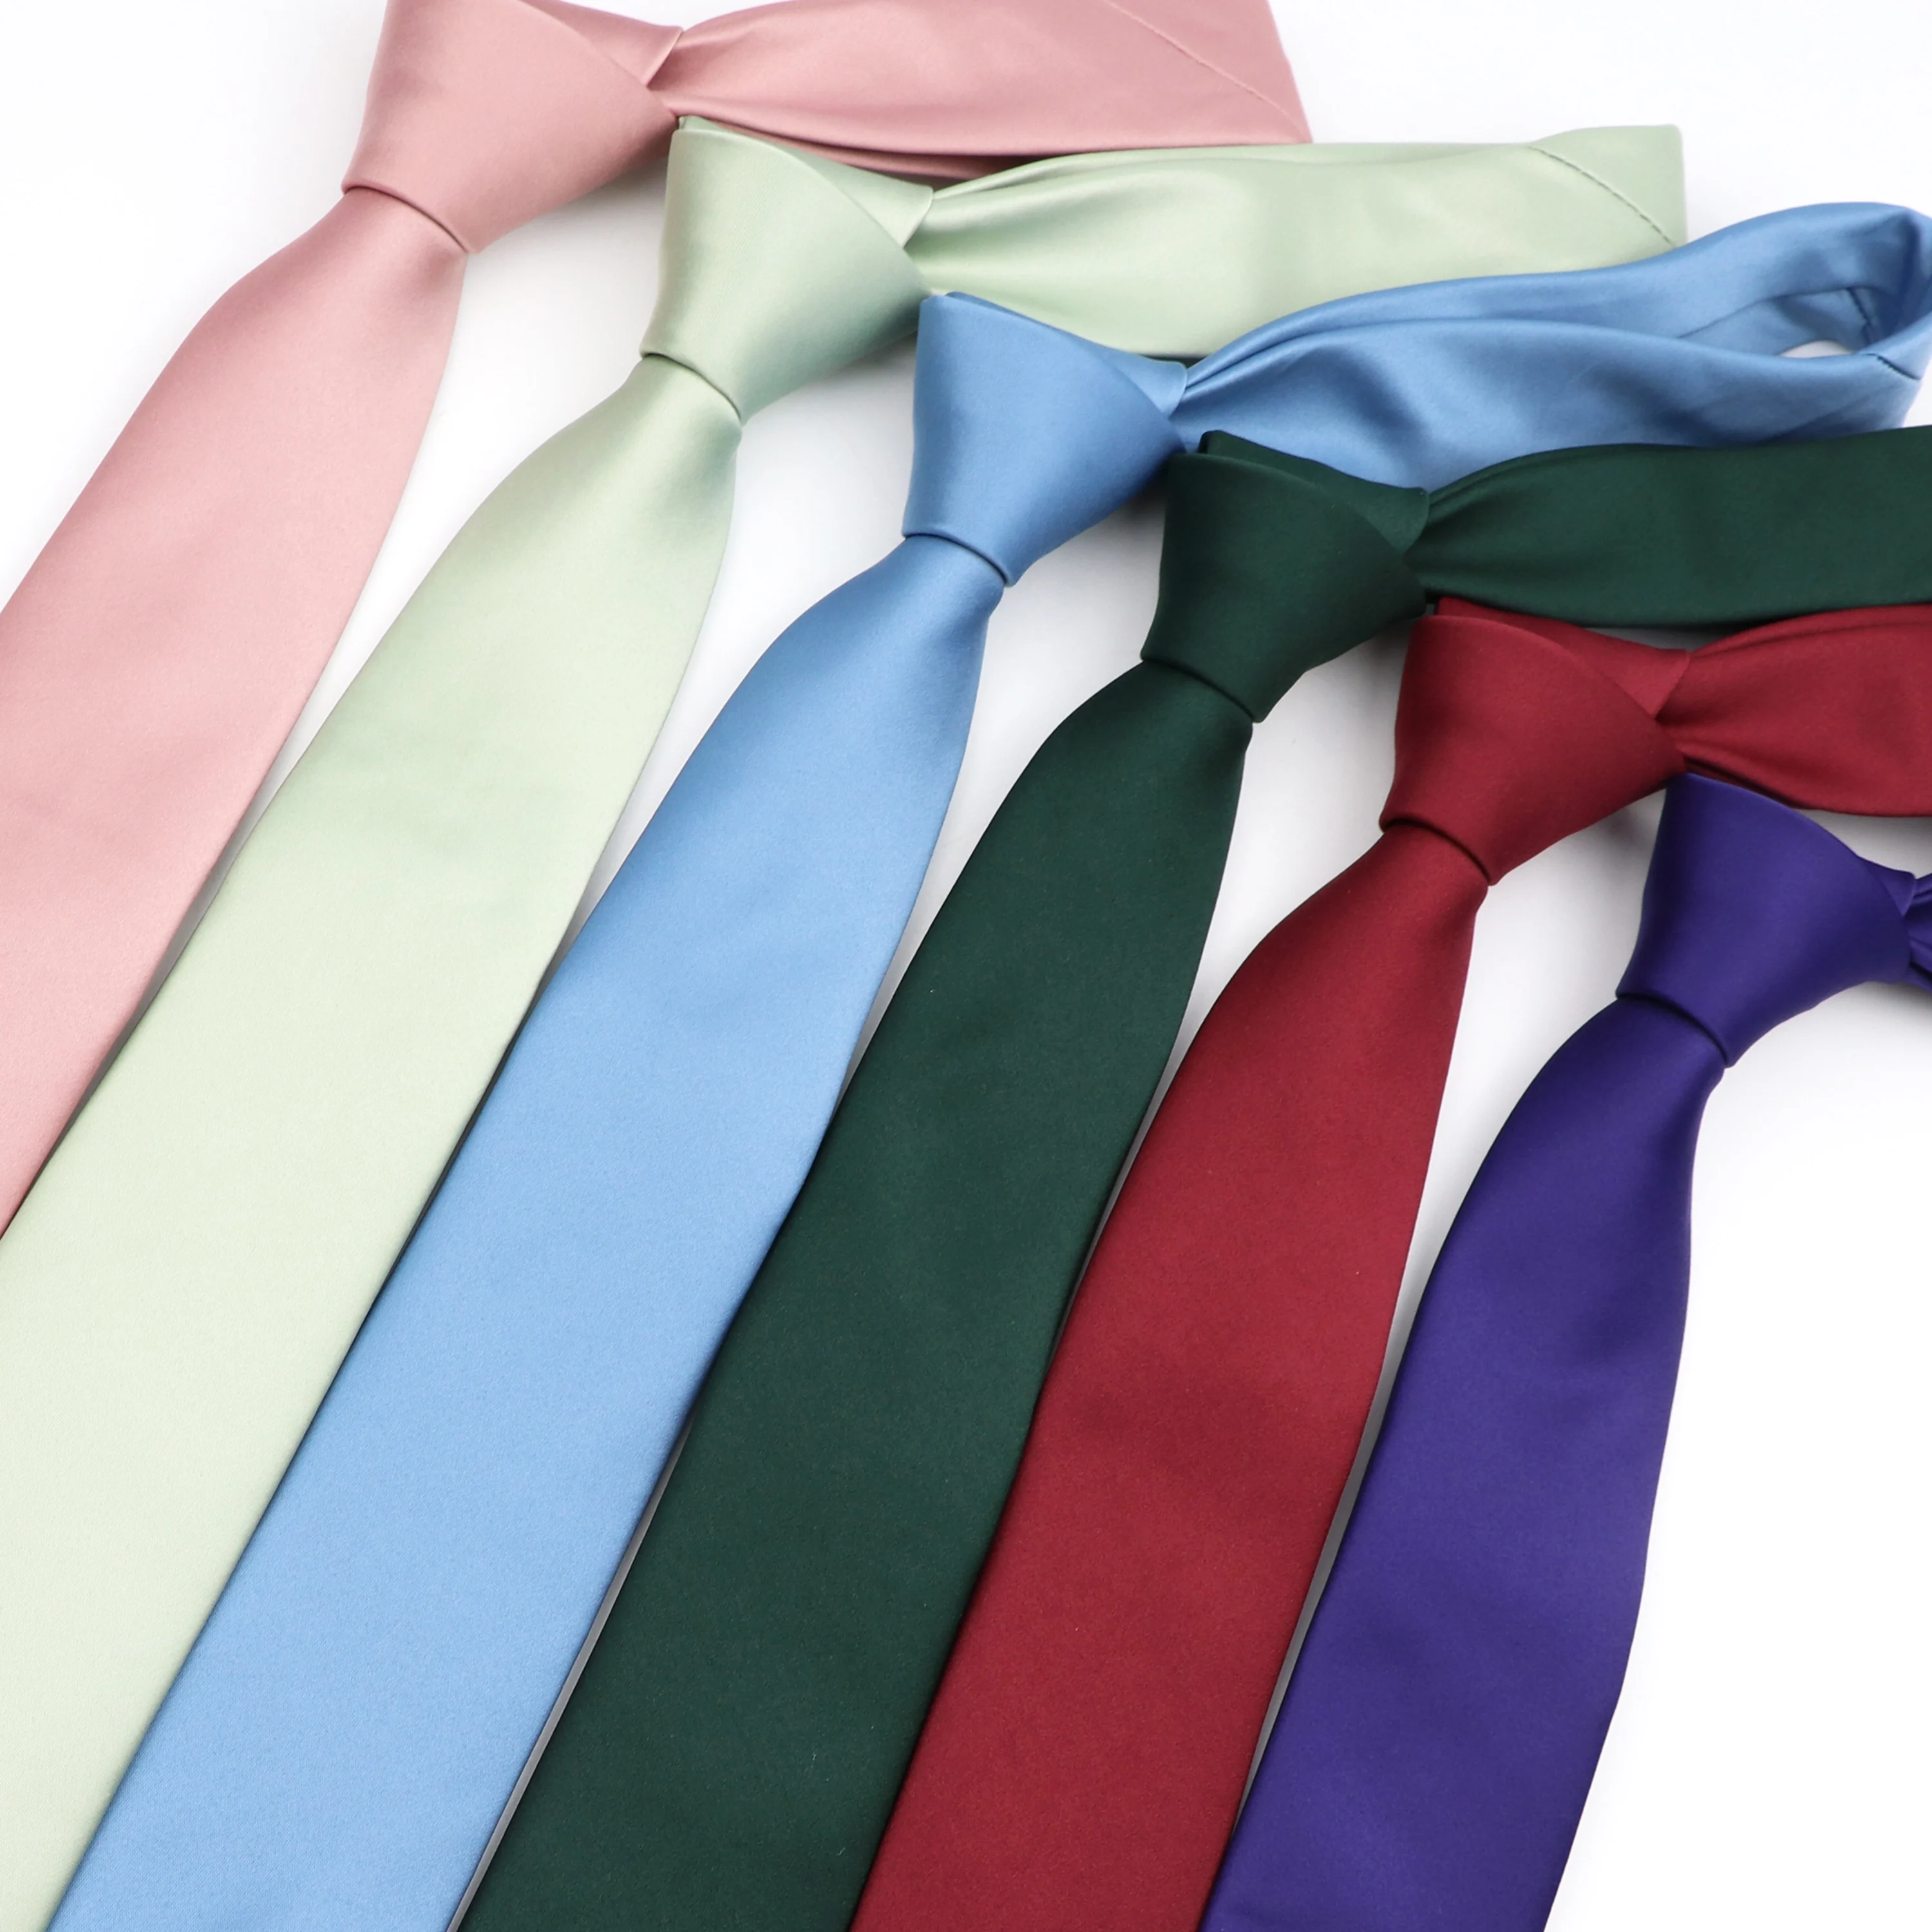 

Men Solid Color Skinny Necktie Fashion Slim Narrow Casual Arrow Tie Formal Wedding Party Ties Male Silk Business Neckties